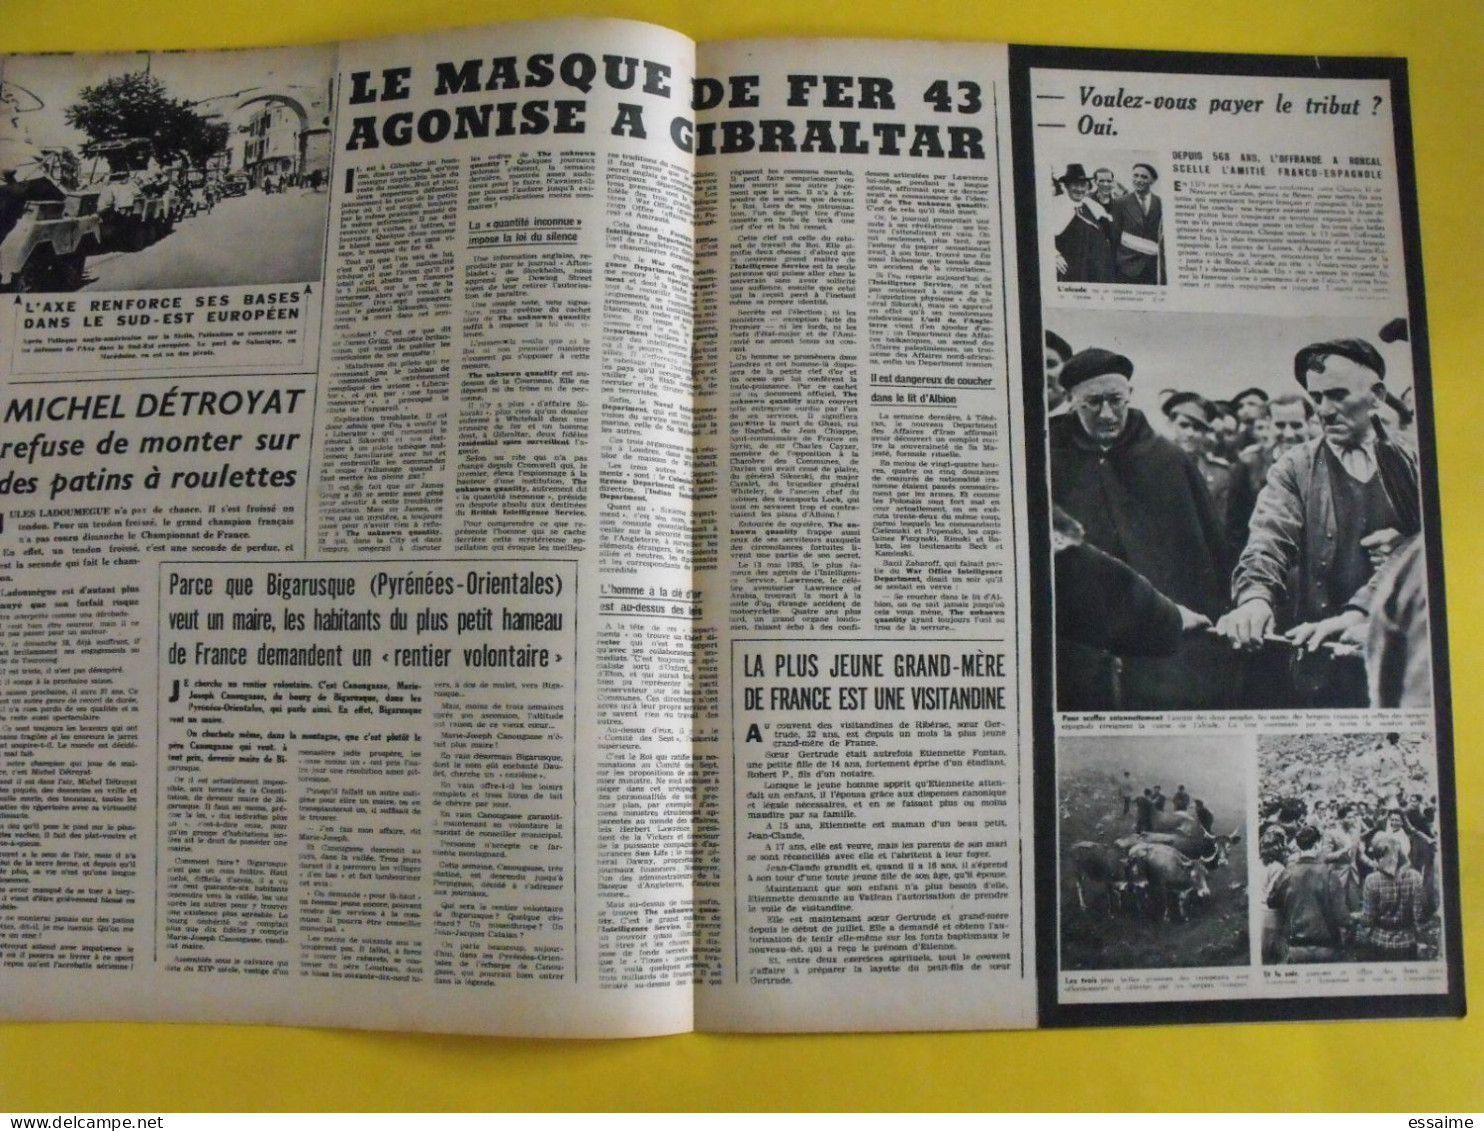 6 revues La semaine de 1943. actualités guerre photos collaboration micheline presle suède espagne sicile crète rome